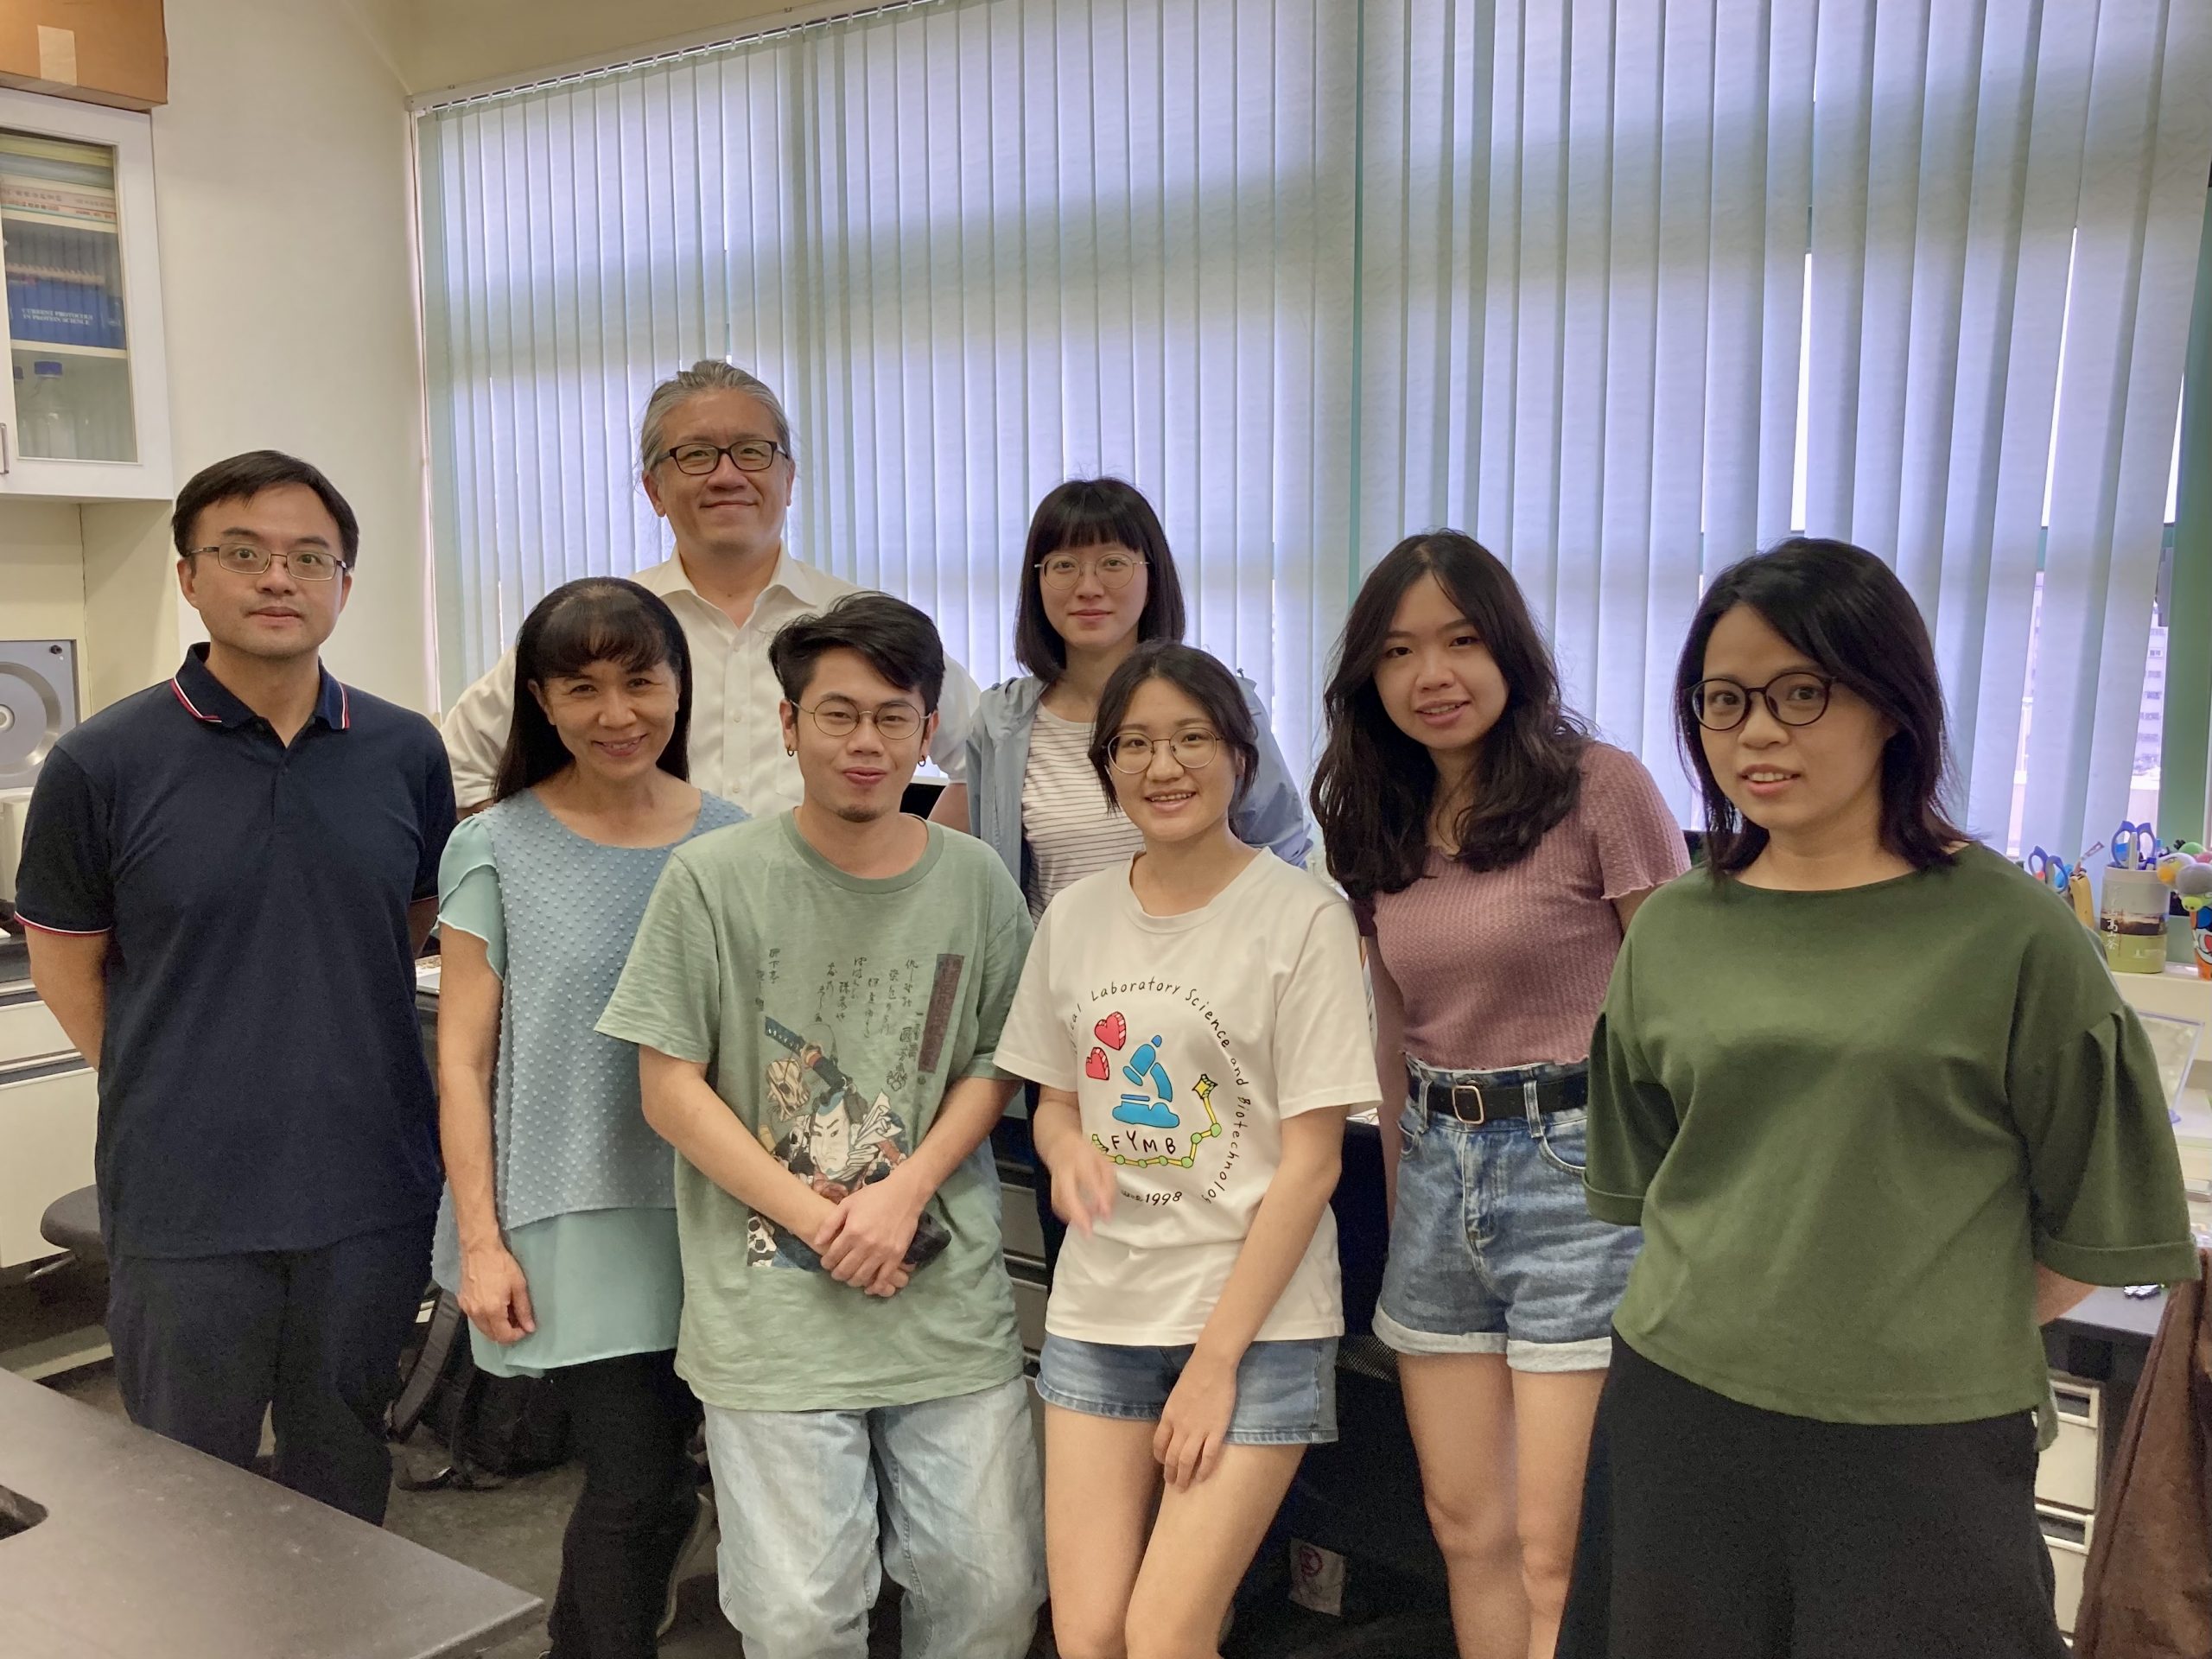 陳盈璁 and Members of the Laboratory 2022 Summer 